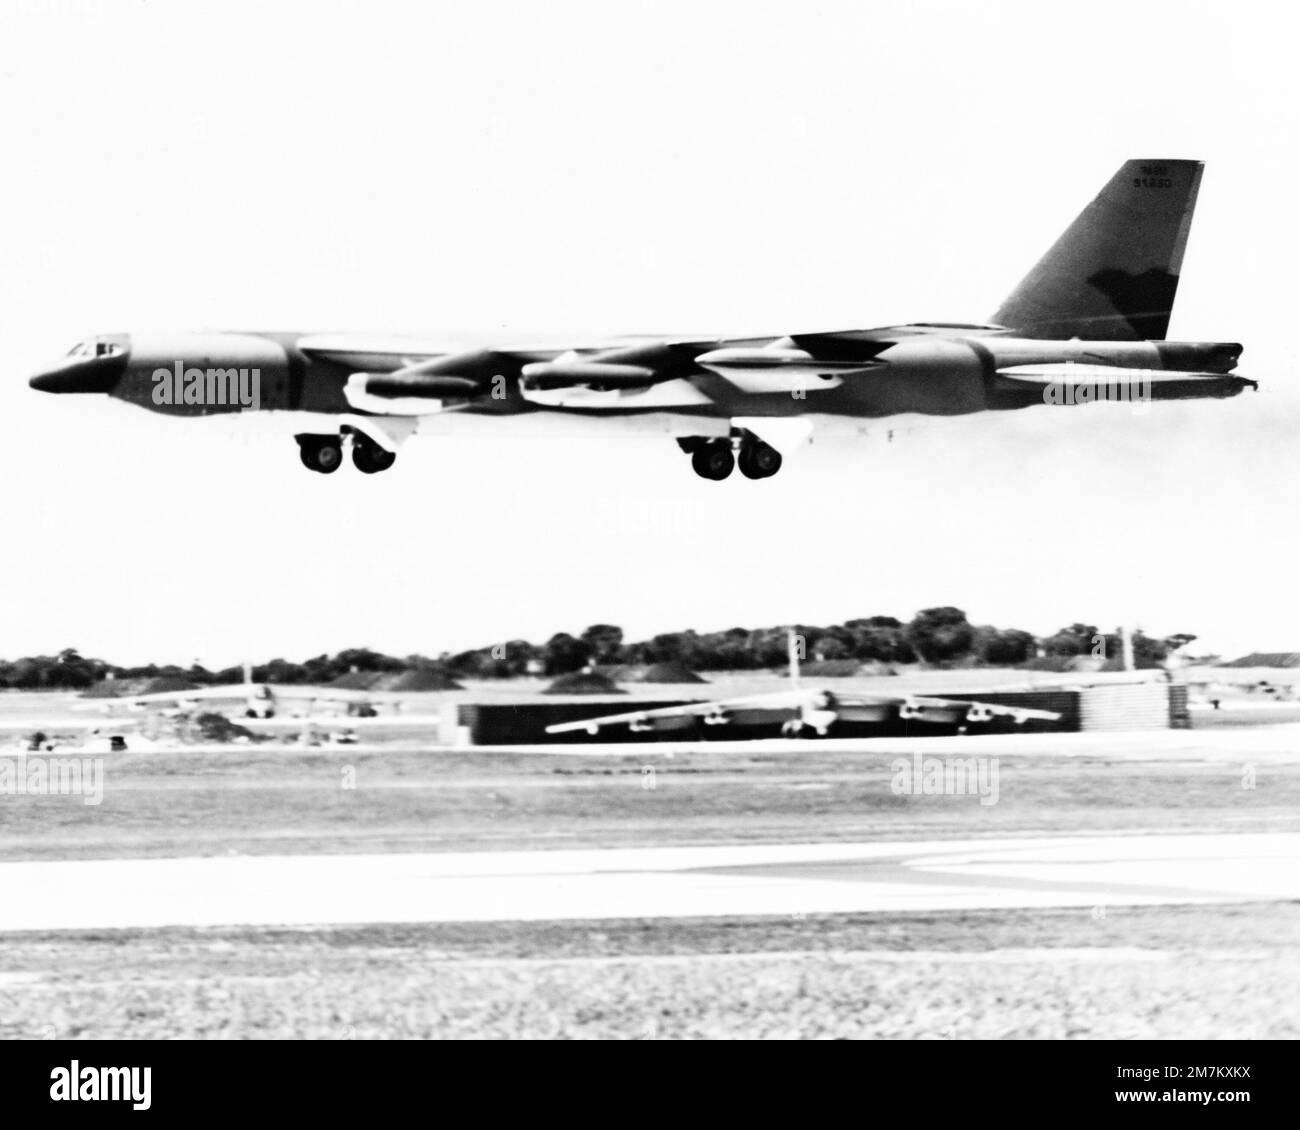 Un avion B-52H Stratofortress de la US Air Force (USAF) en approche d'atterrissage pendant l'opération LINEBACKER. Objet opération/série : BASE DE LINEBACKER : base aérienne d'Andersen État : Guam (GU) pays : États-Unis d'Amérique (États-Unis) Banque D'Images